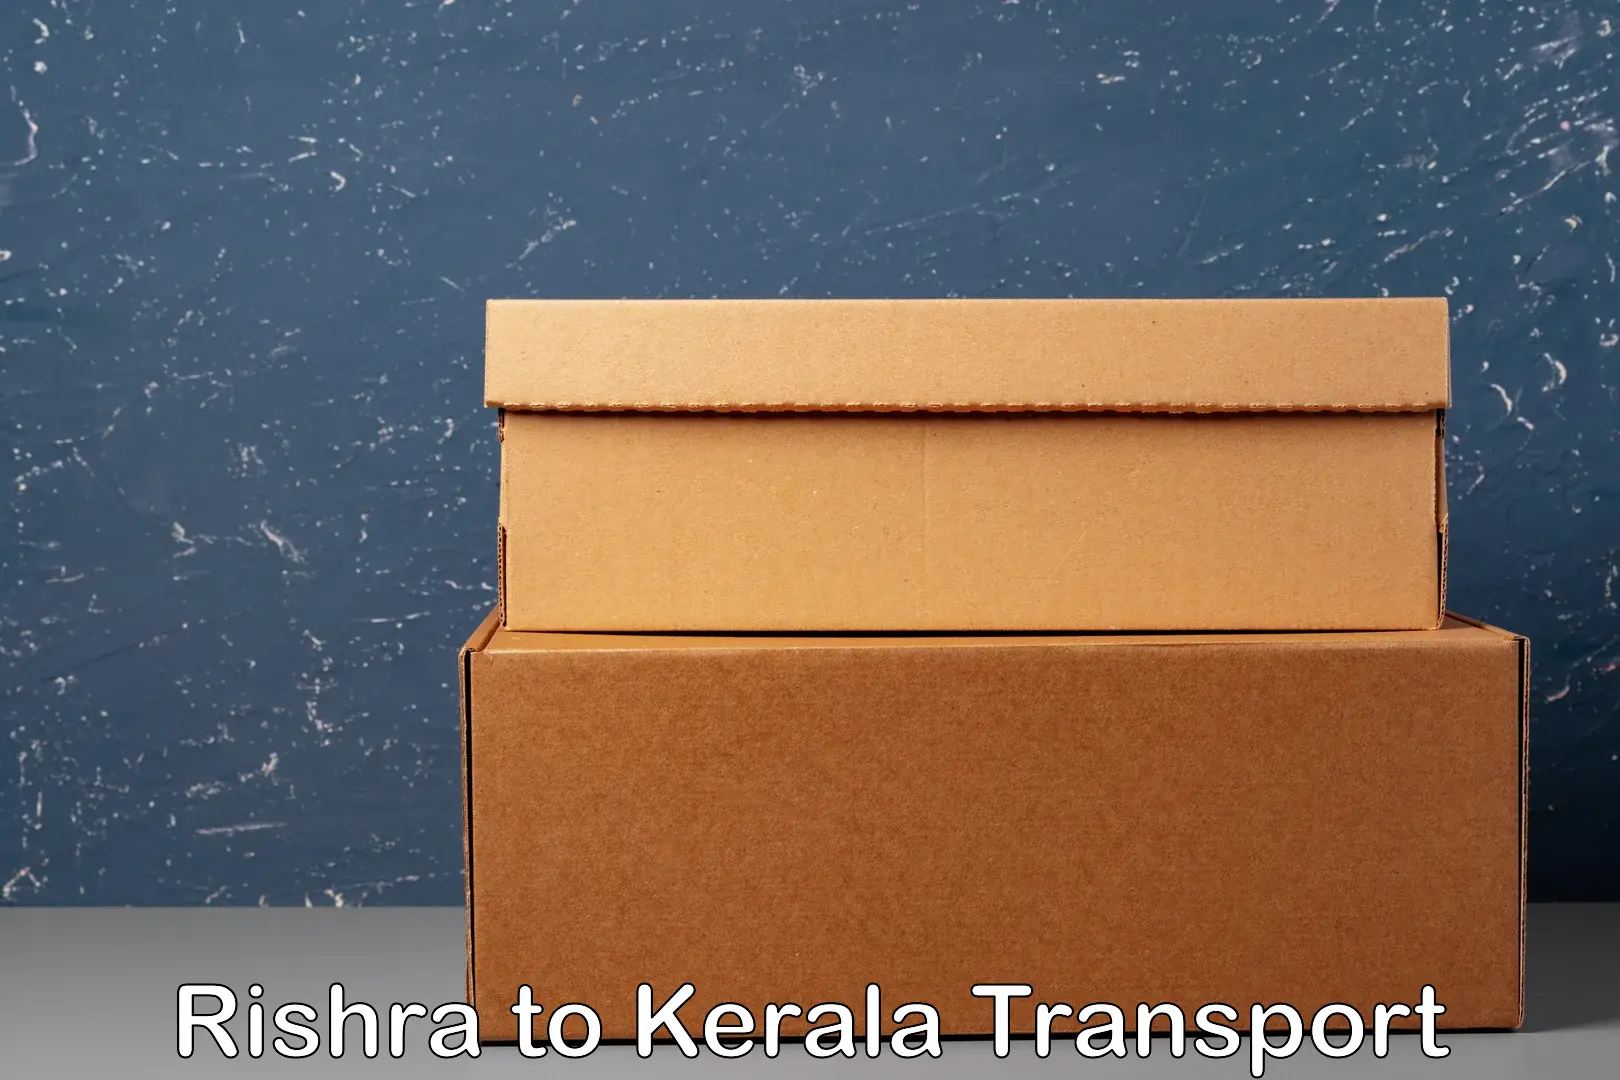 Online transport Rishra to Kerala